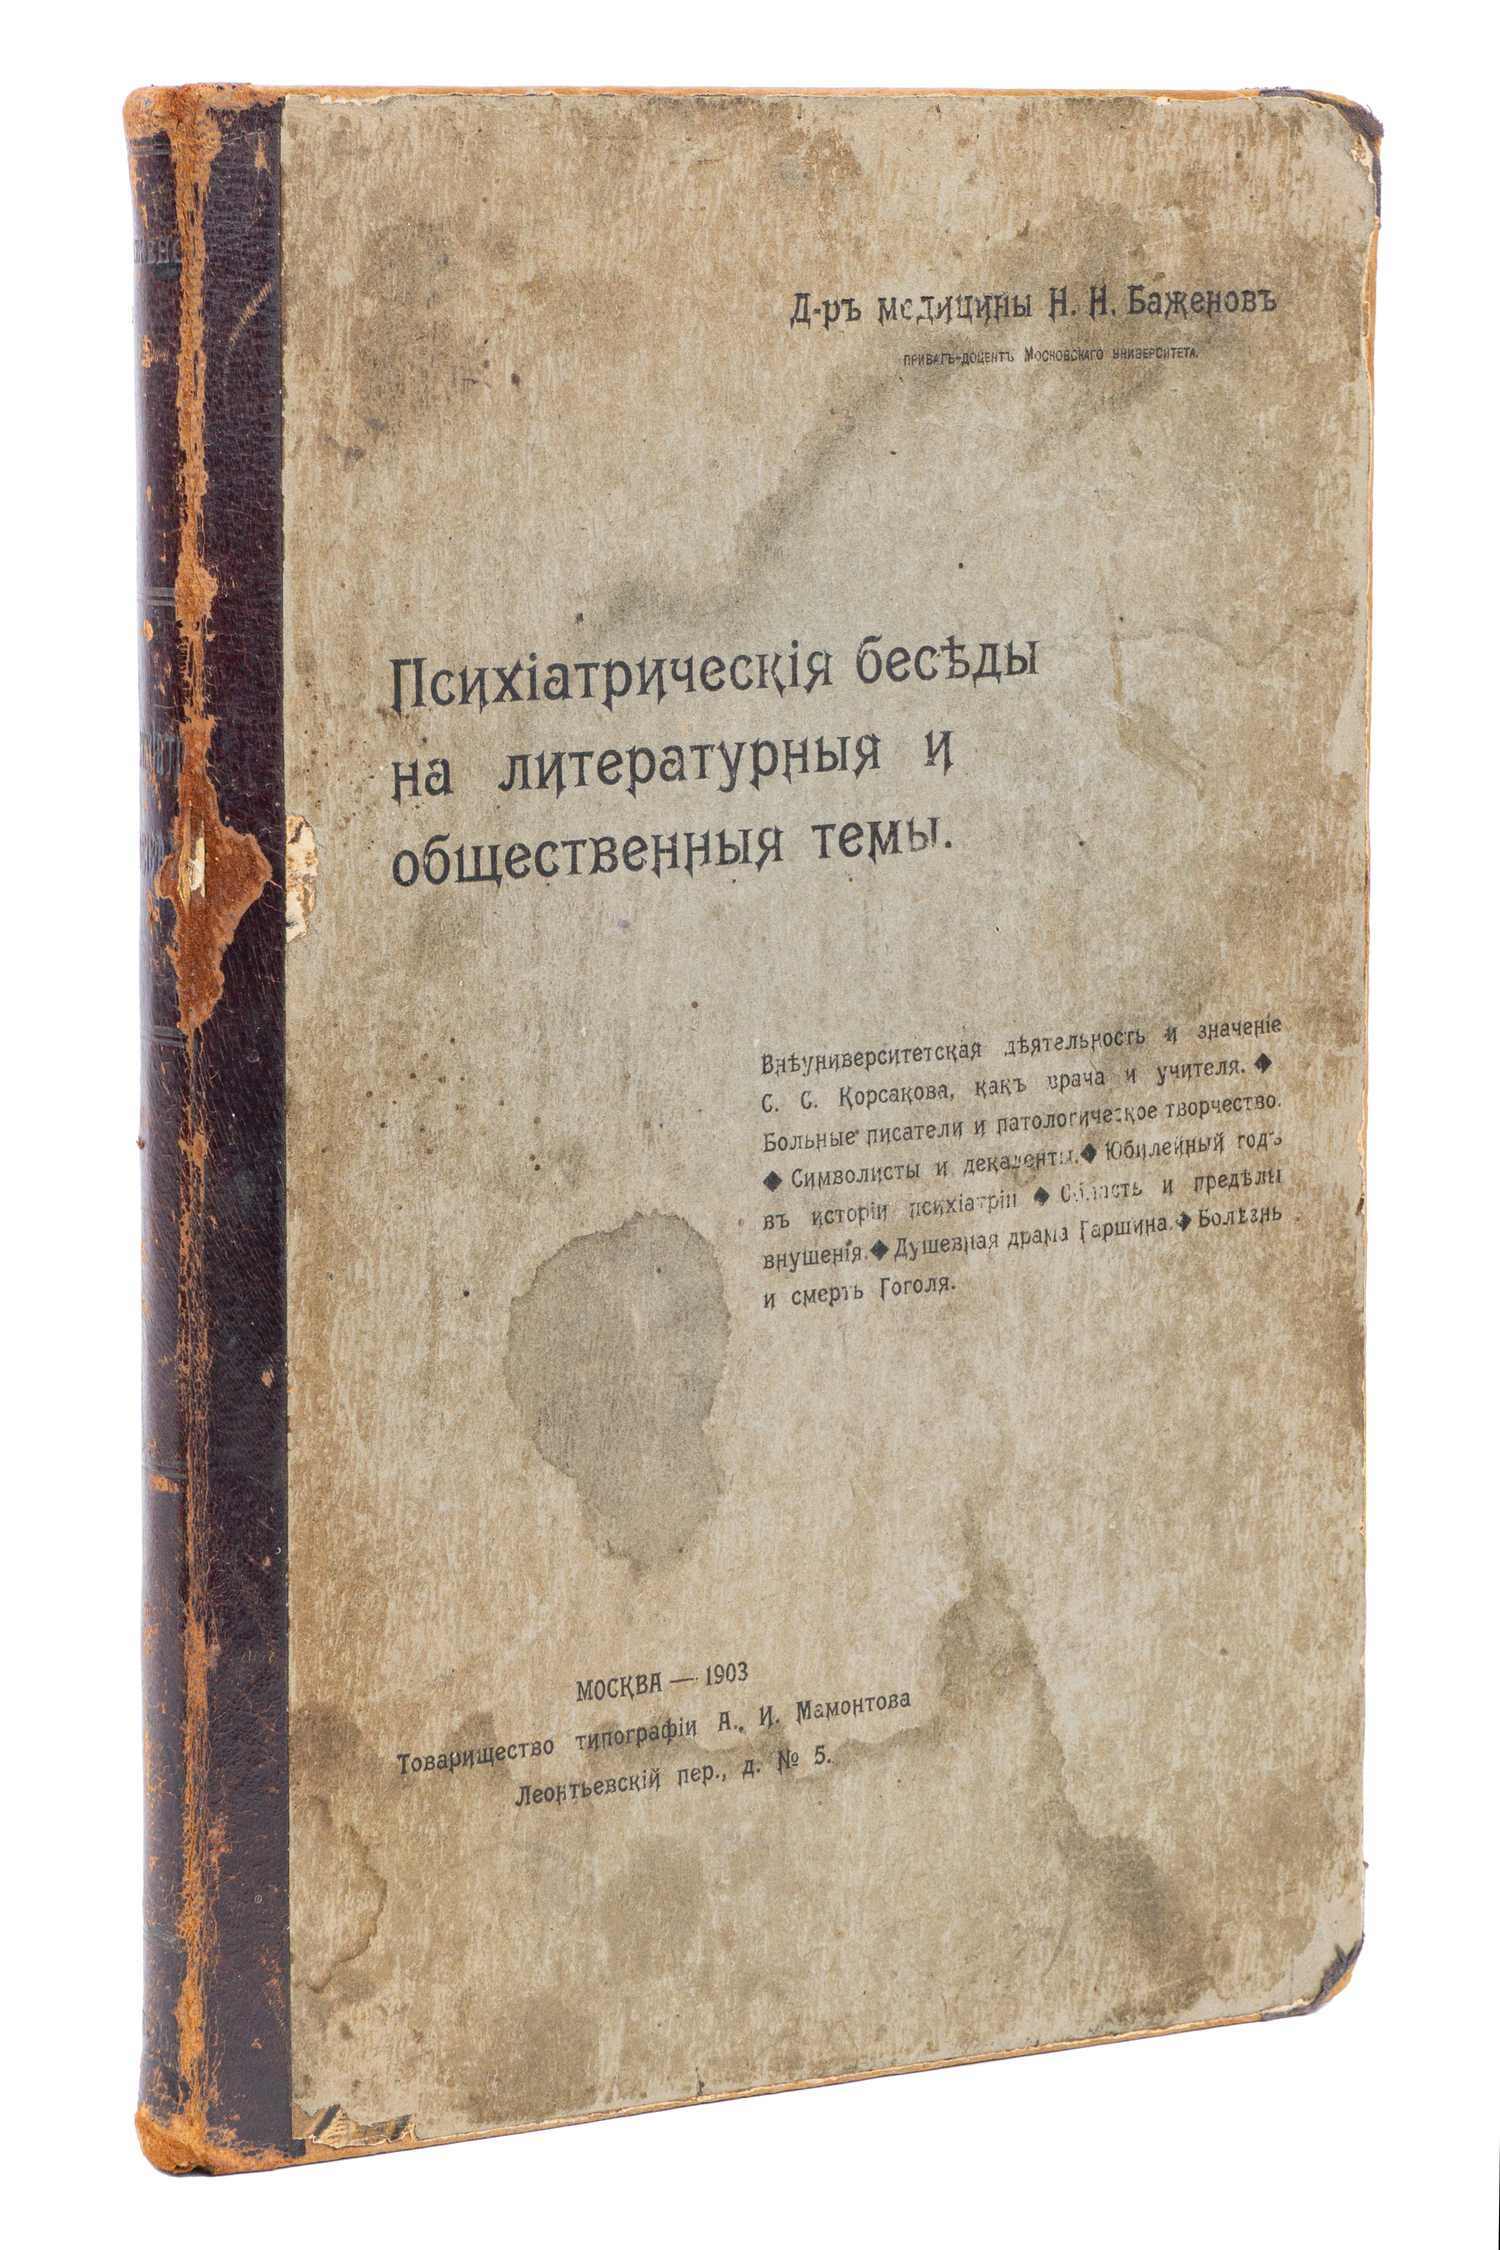 Баженов Н.Н. Психиатрические беседы на литературные и общественные темы (М., 1903).